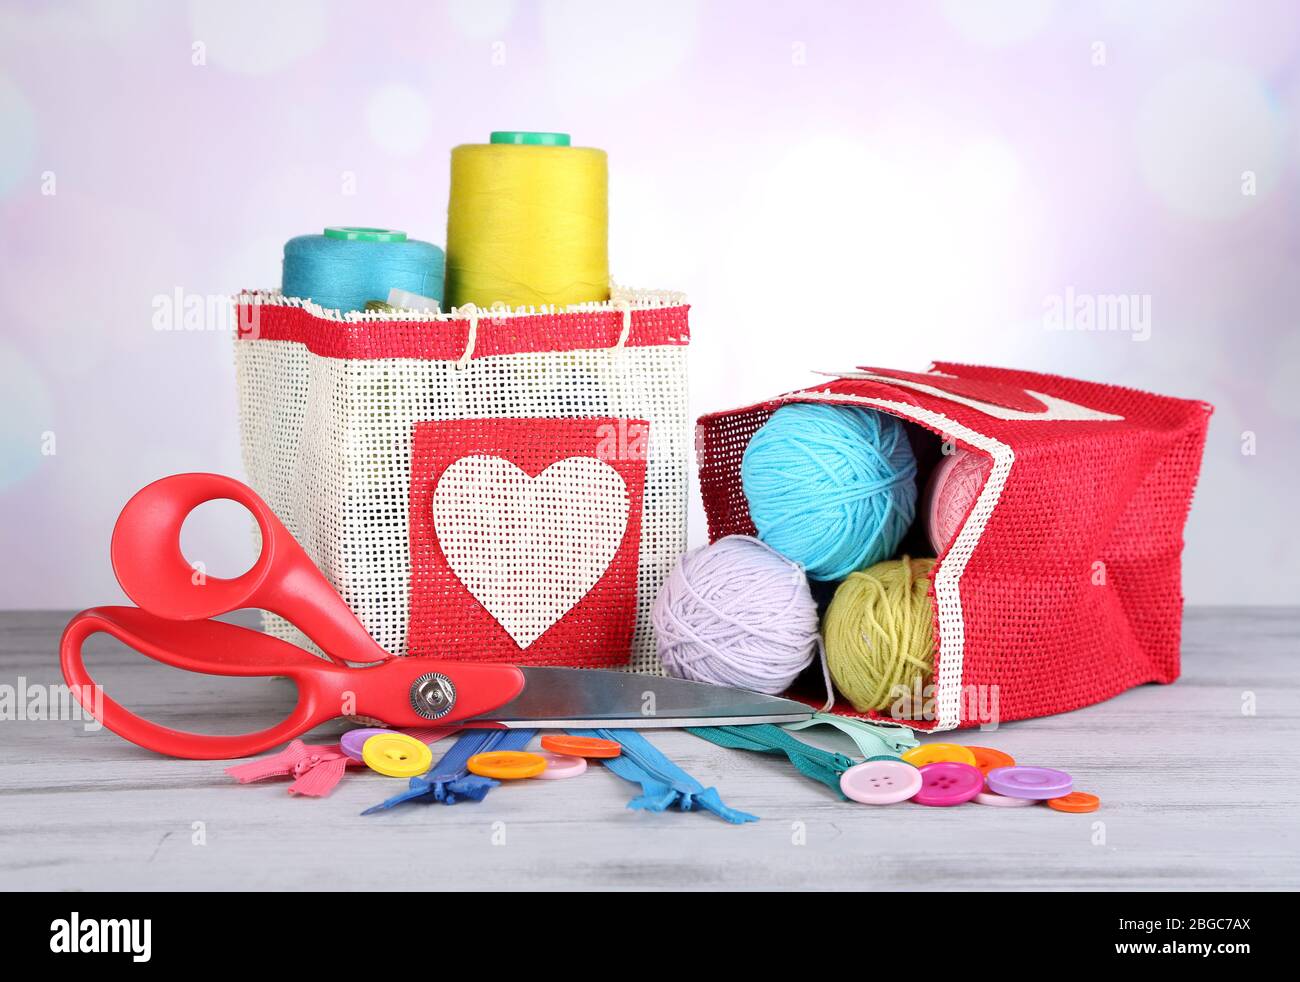 Bolsas de regalo de tela, grandes, medianas, pequeñas, bolsa con cordón,  bolsas de regalo para niños, bolsas de regalo de lino -  México